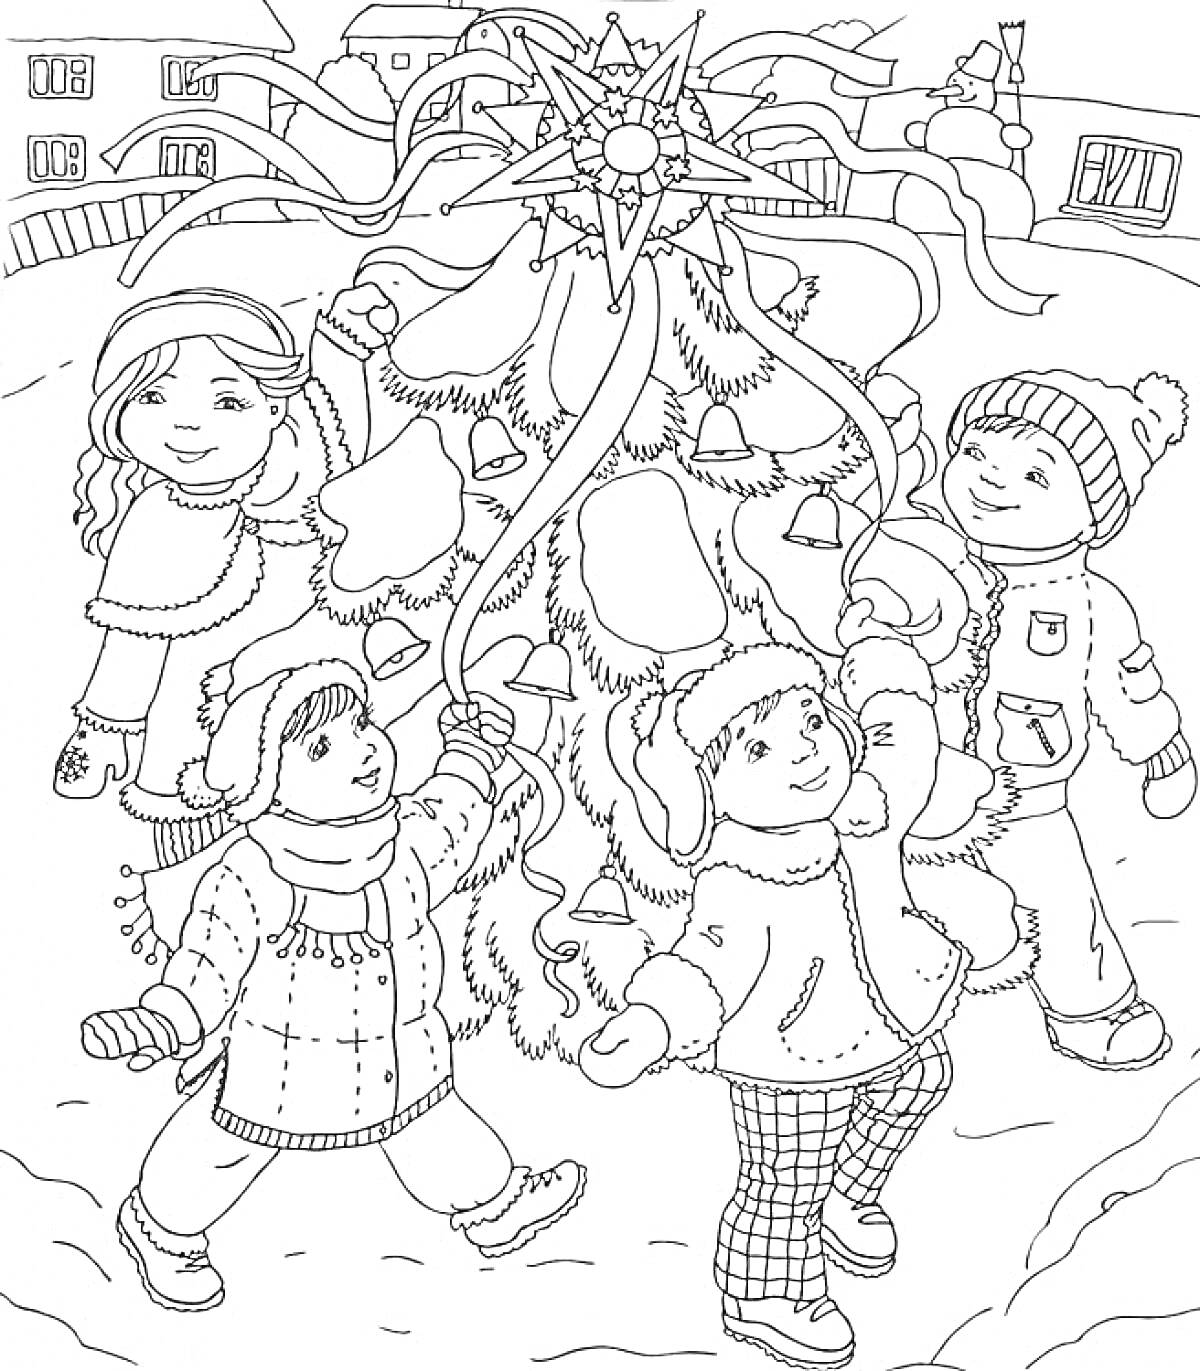 Дети водят хоровод вокруг ёлки, держа рождественский звезду, зимний пейзаж с домами на заднем плане